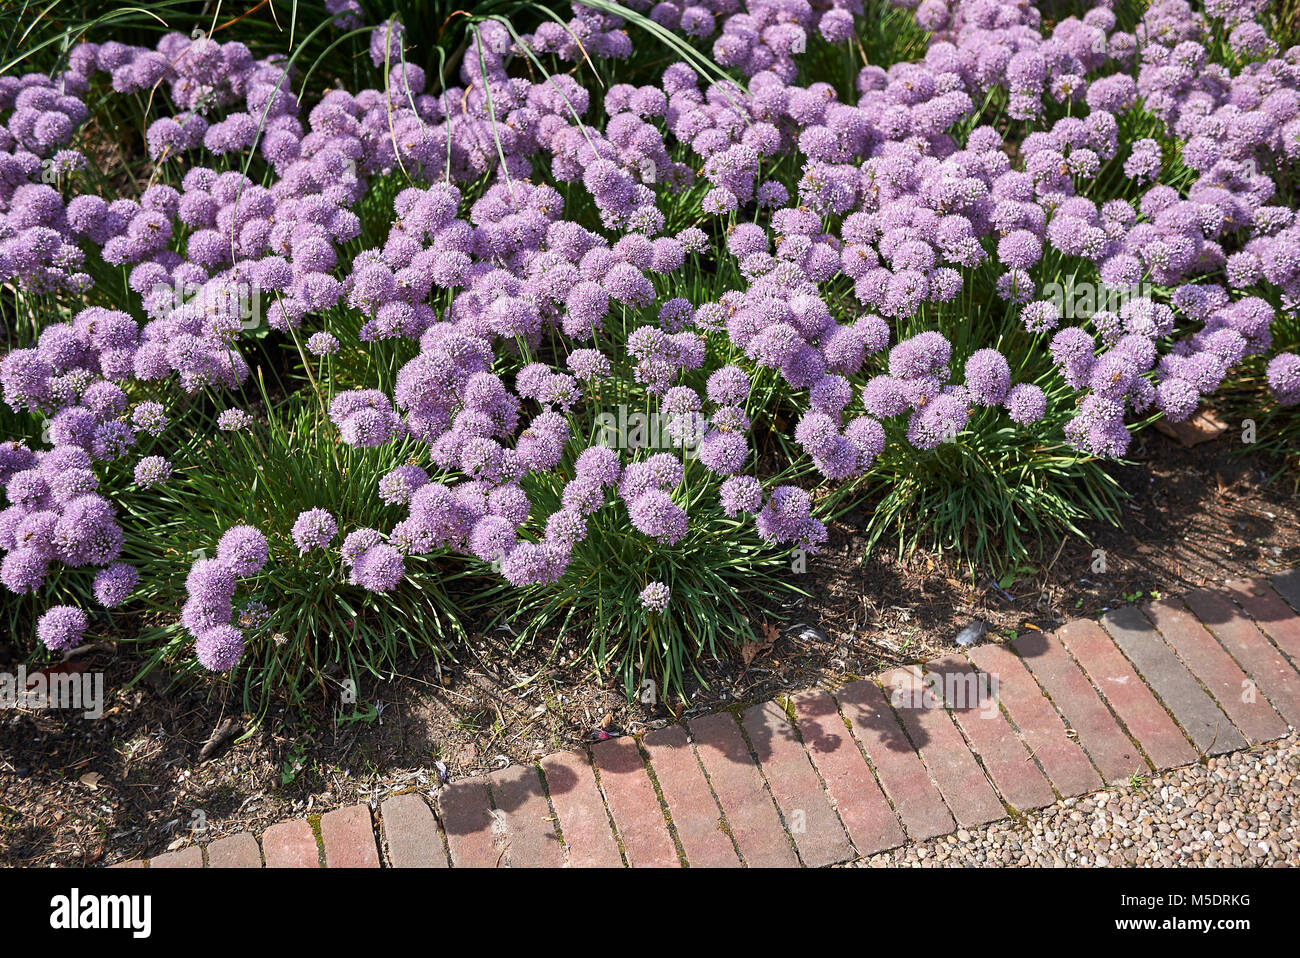 Allium senescens blooming Stock Photo